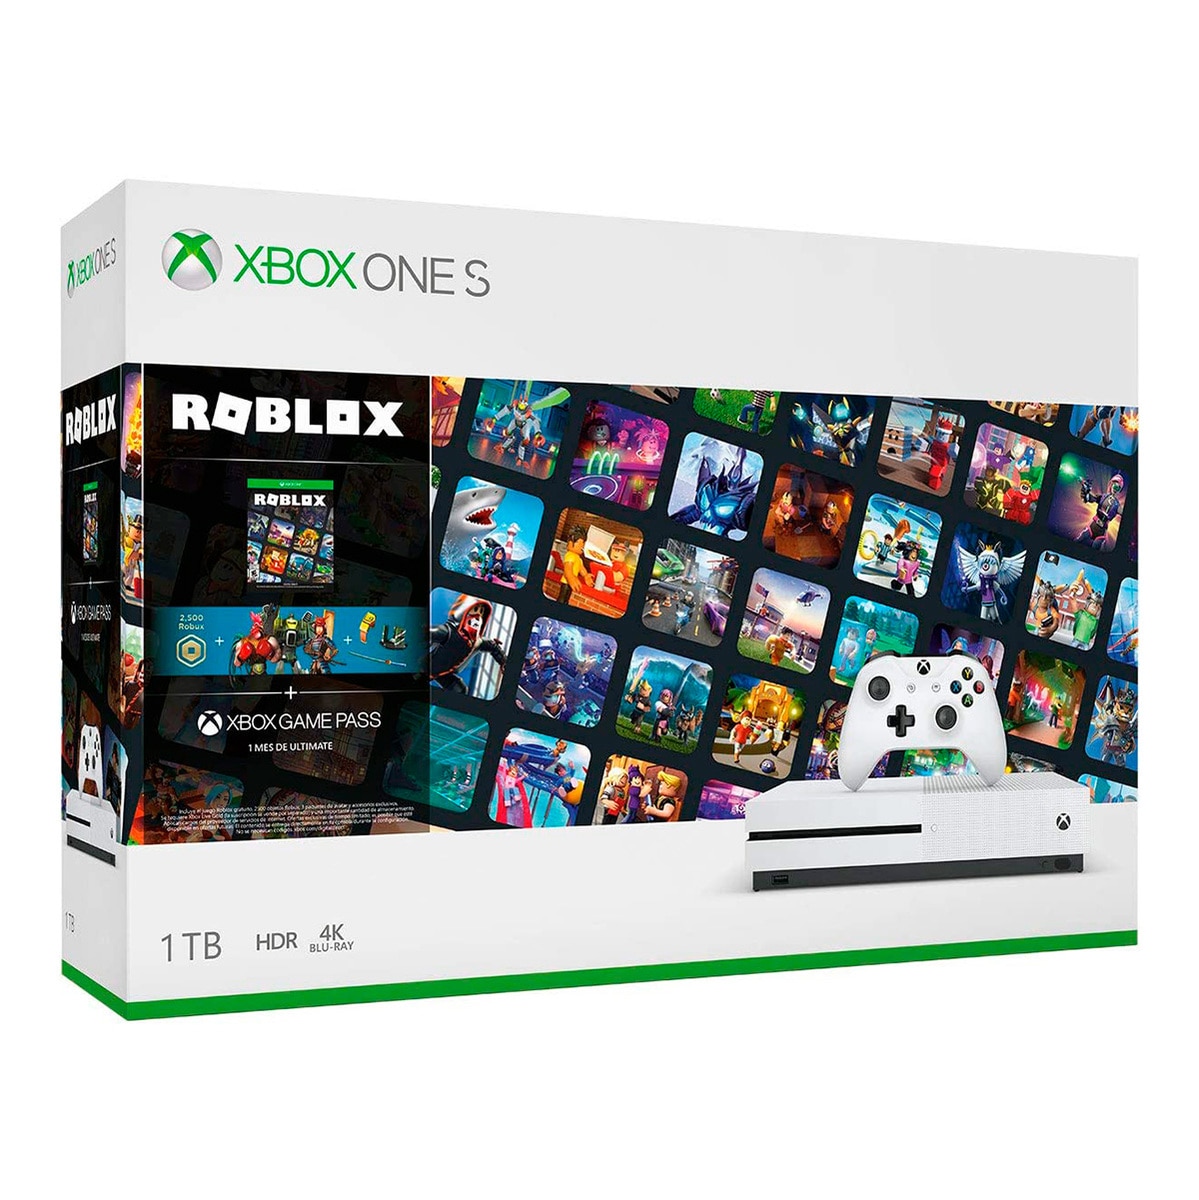 Xbox One S 1 Tb Roblox Costco Mexico - xbox roblox videojuego